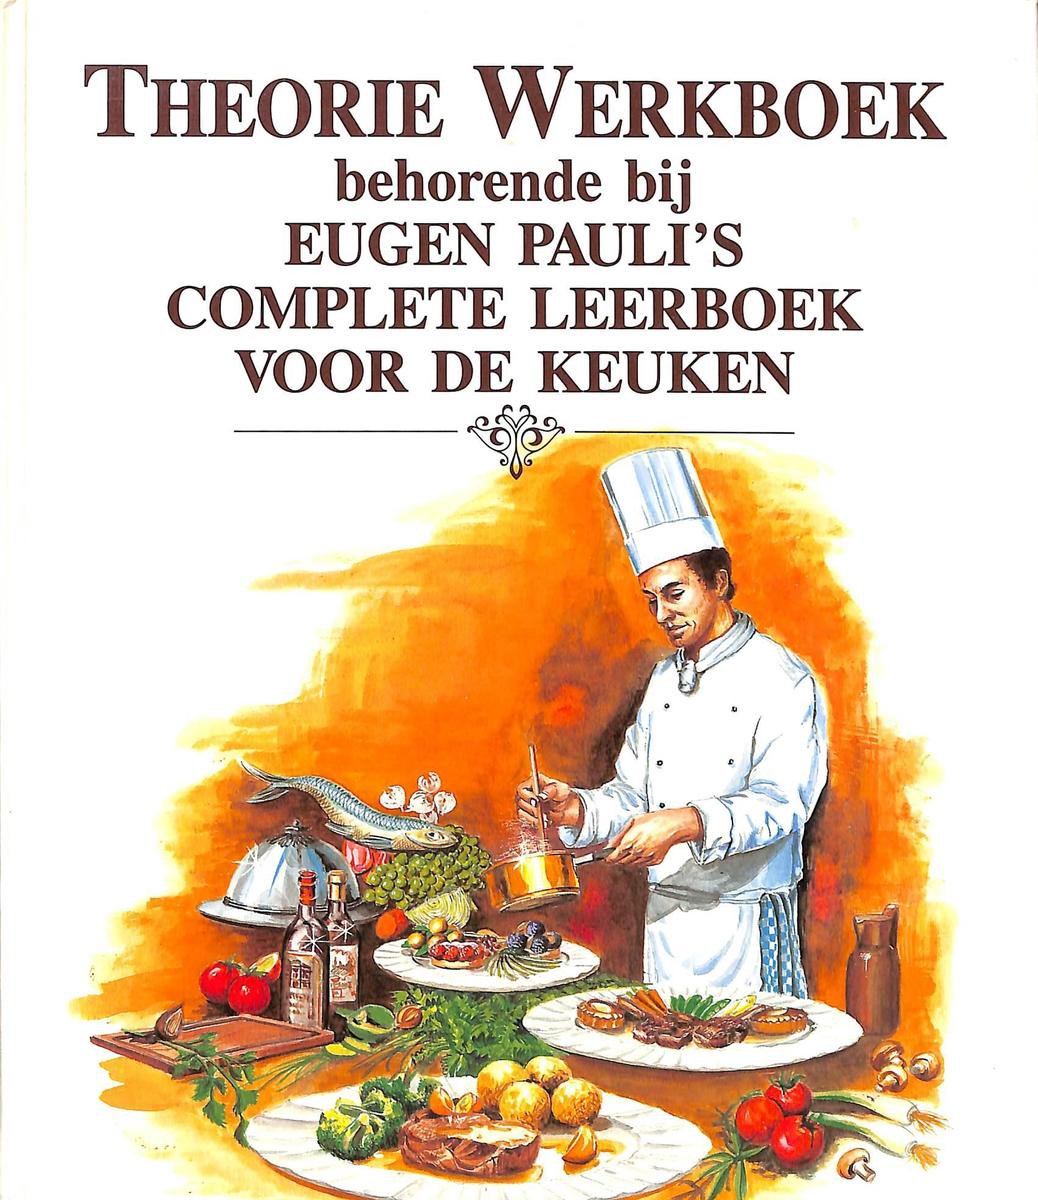 Theorie werkboek behorende bij Eugen Pauli's complete leerboek voor de keuken